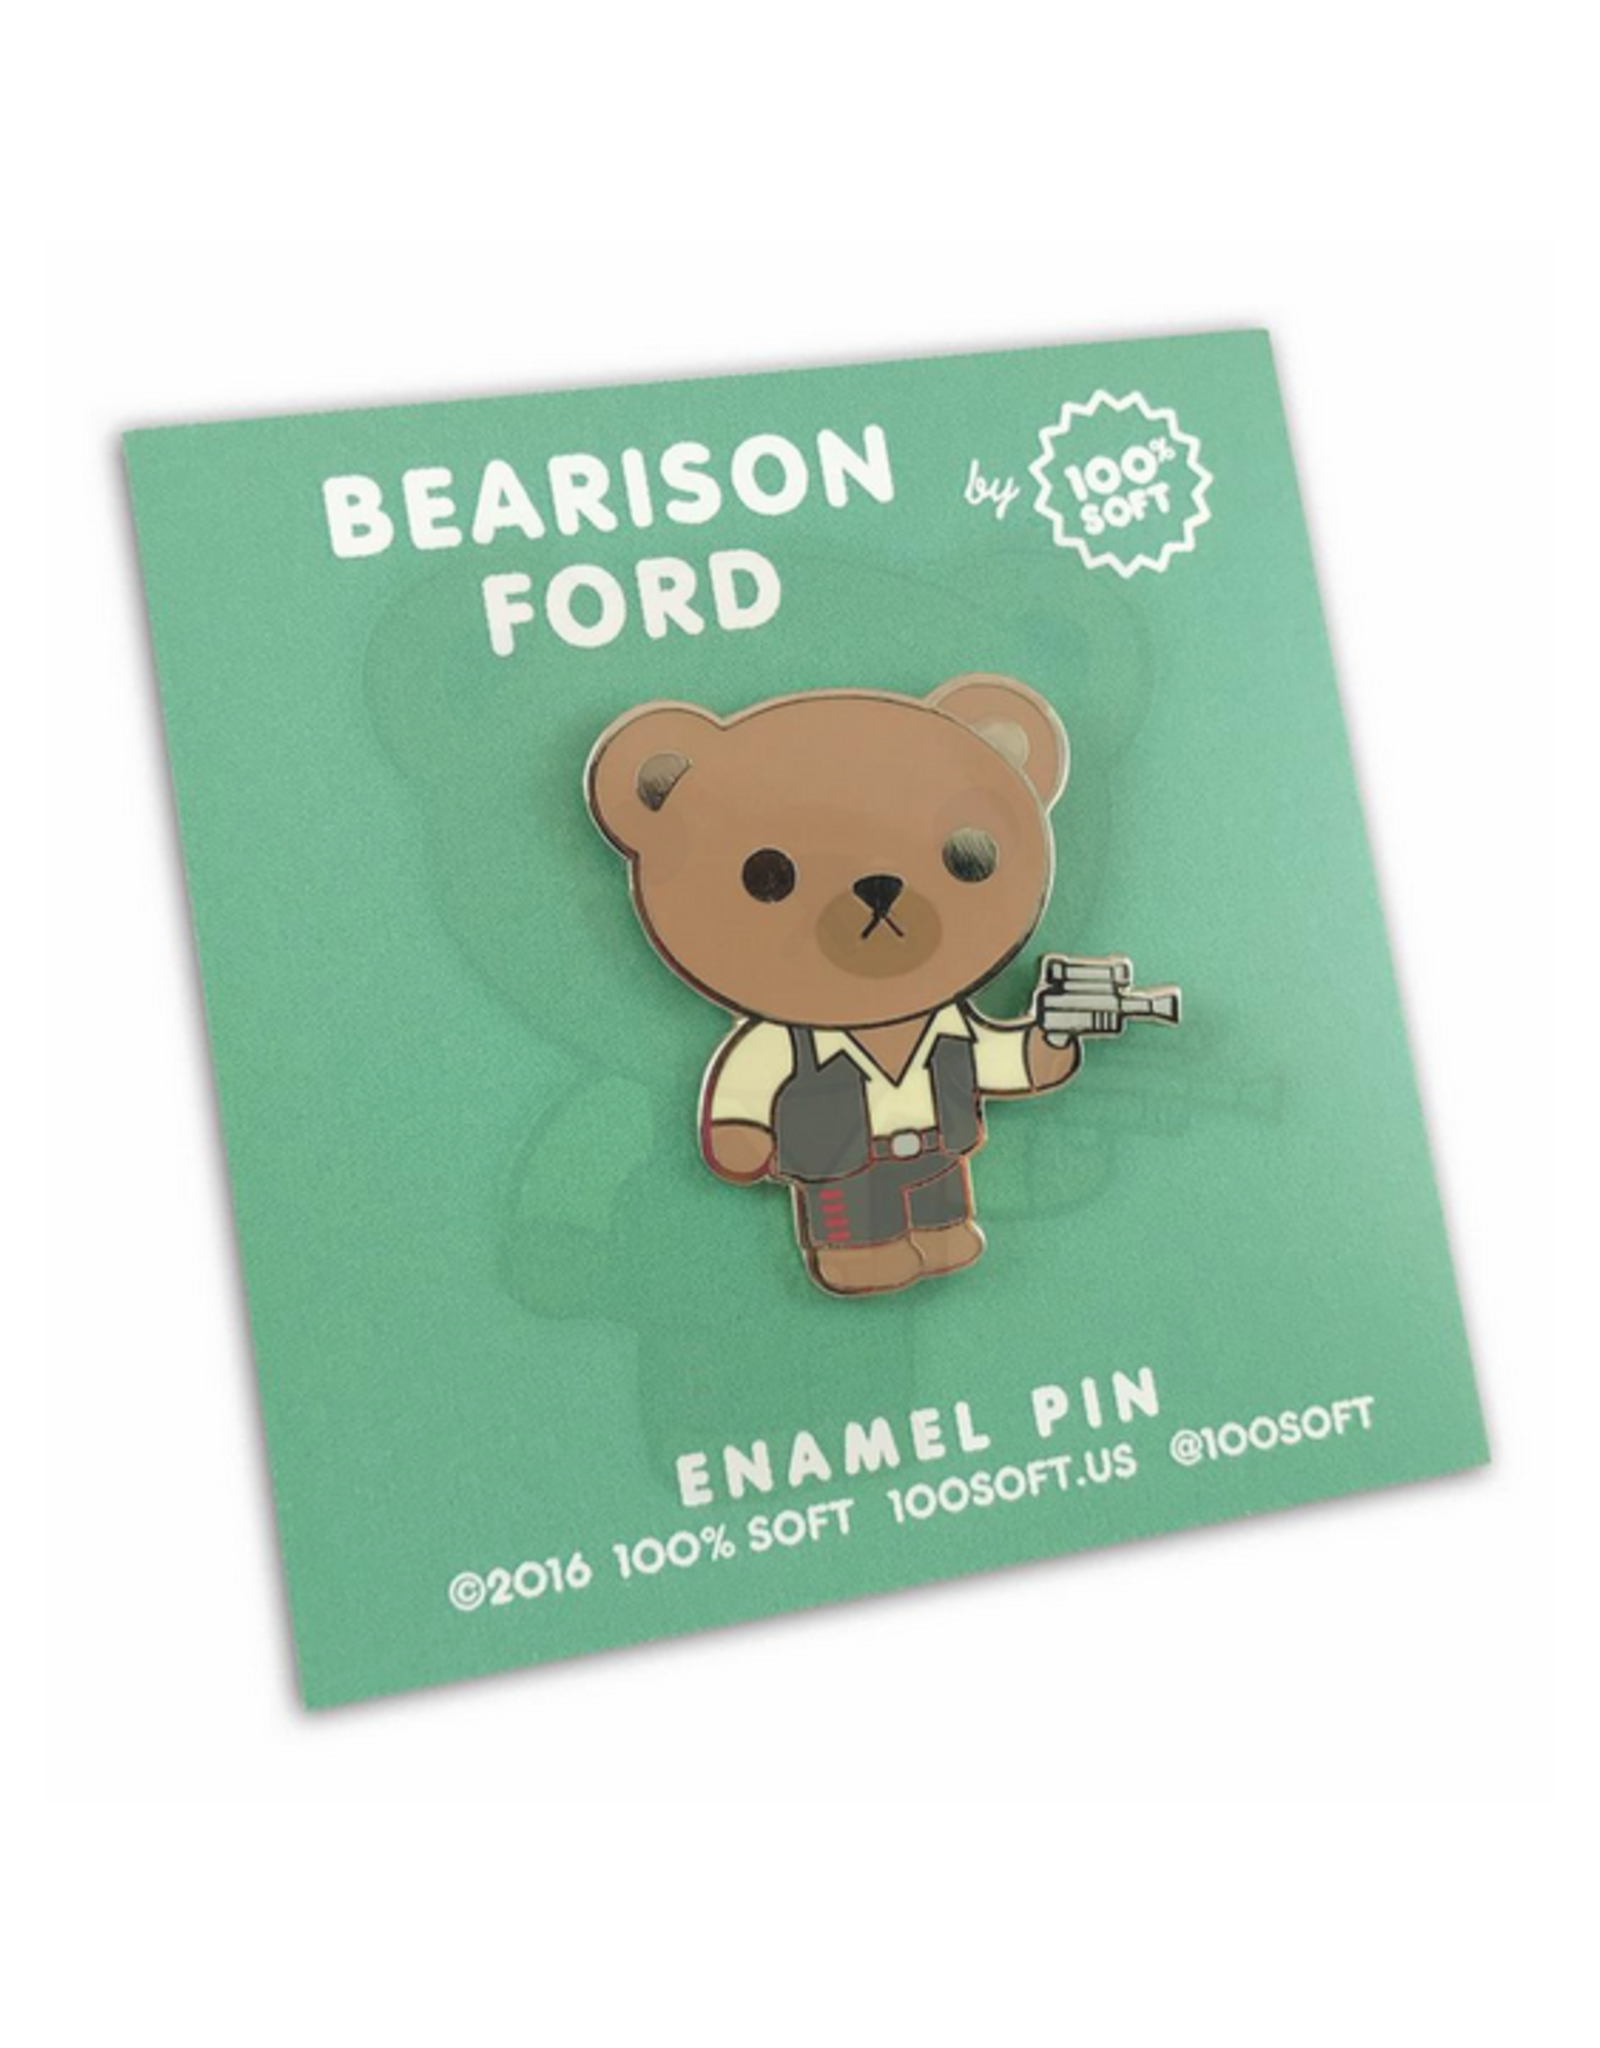 Bearison Ford Enamel Pin